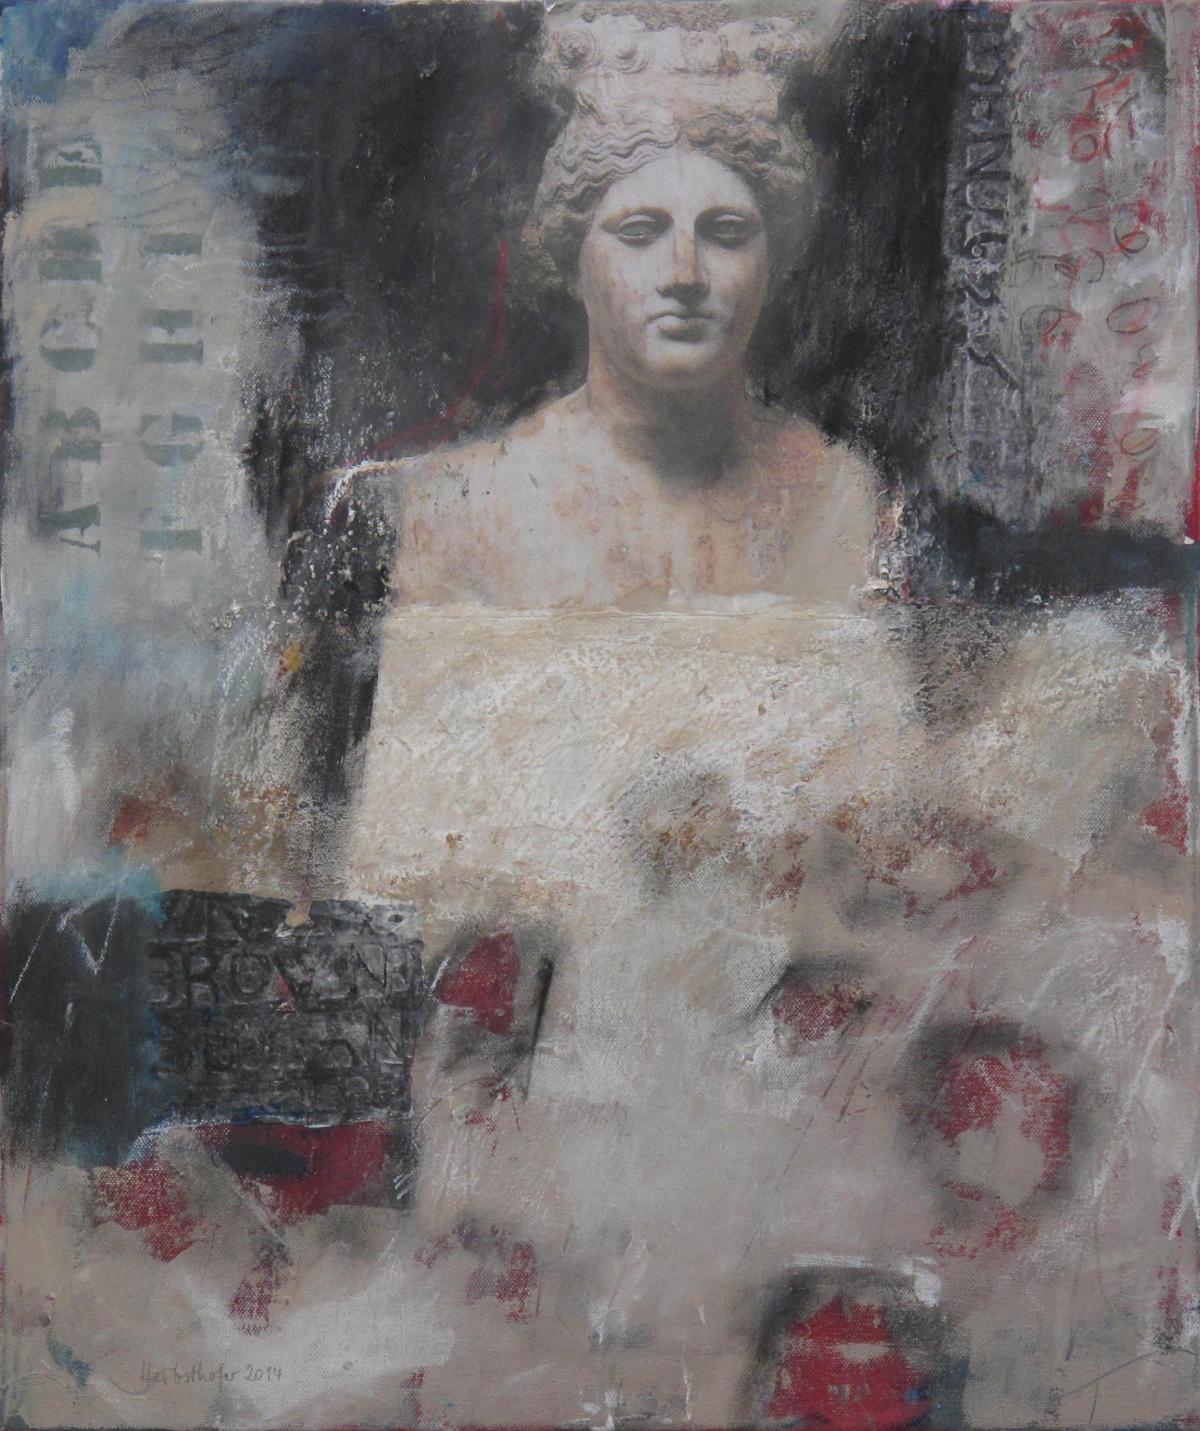 Göttinnen V, 2014, Acryl und Collage auf Leinwand, 60 x 50 cm